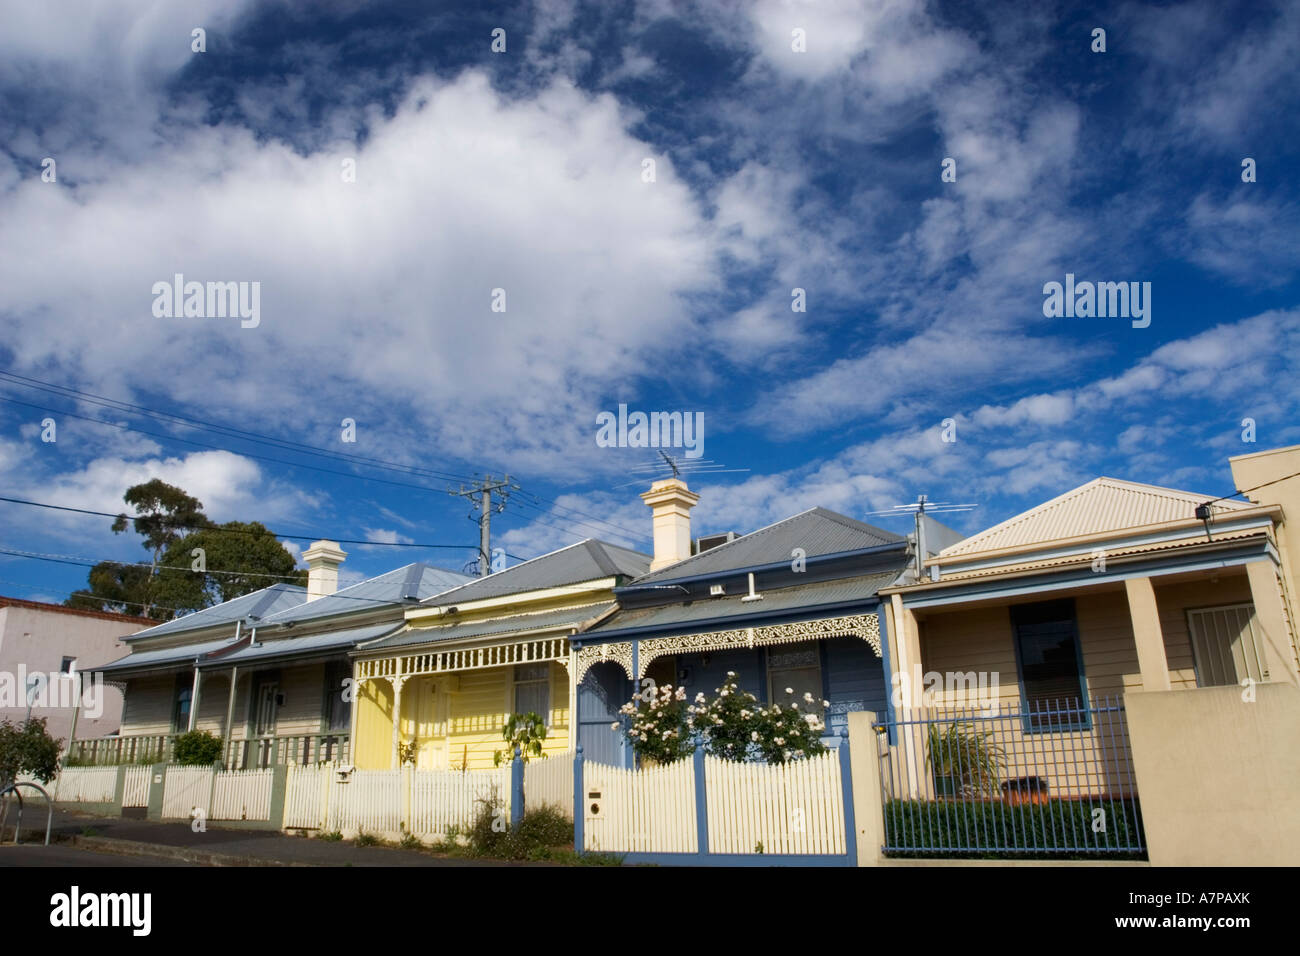 Architektur / eine Reihe von einzelnen Fronted, Wetter-Board-Cottages.Located in Melbourne "Vorort von Flemington" Australien. Stockfoto